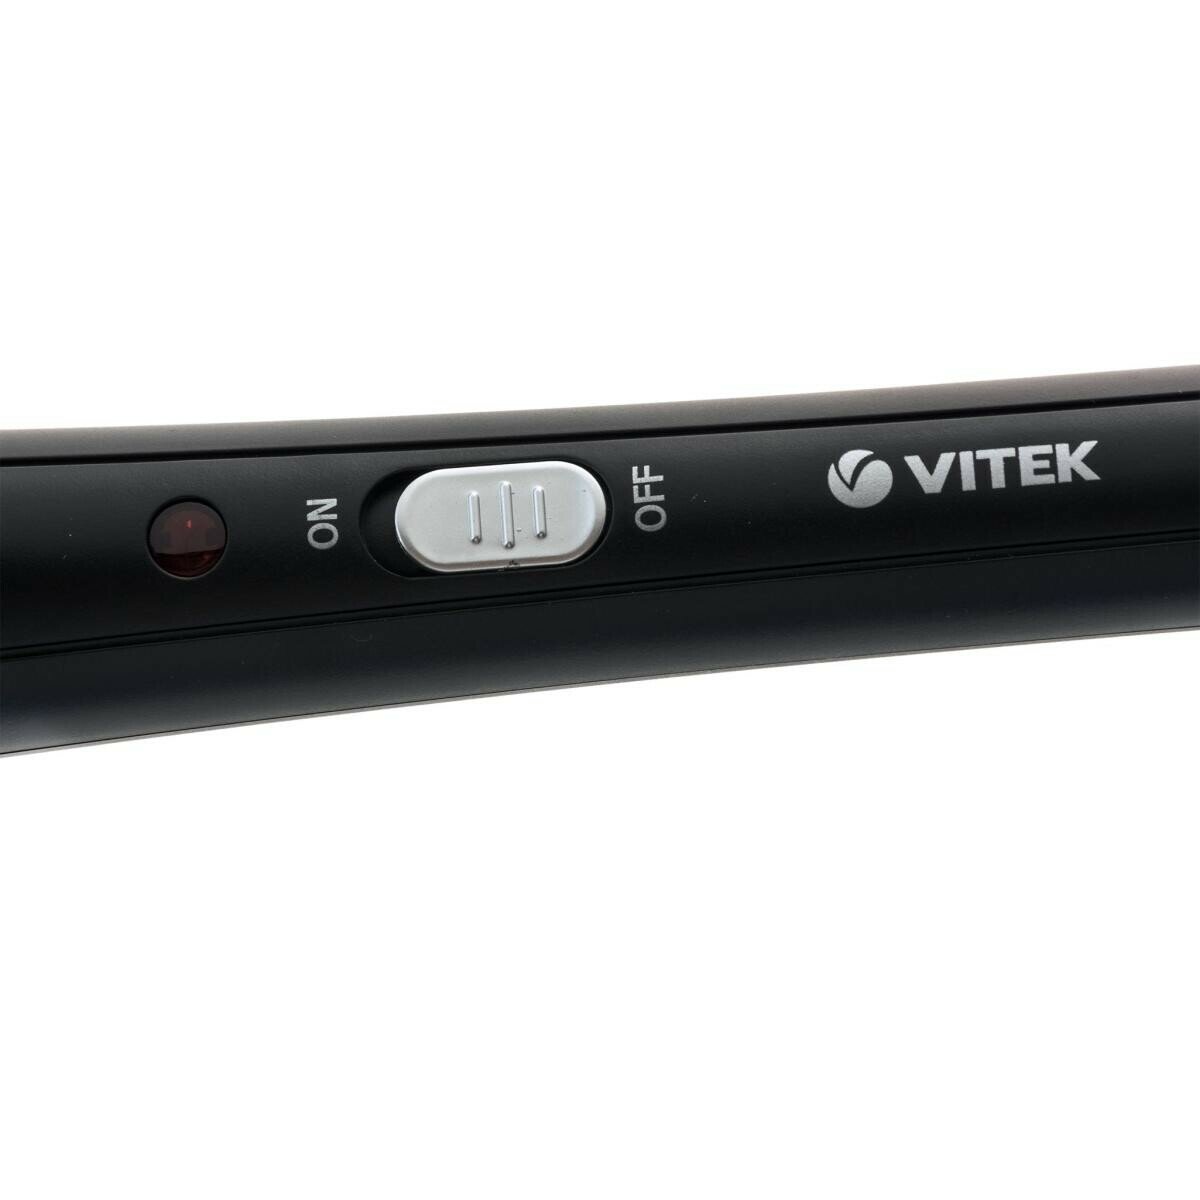 Прибор для укладки волос Vitek VT-2379 черный